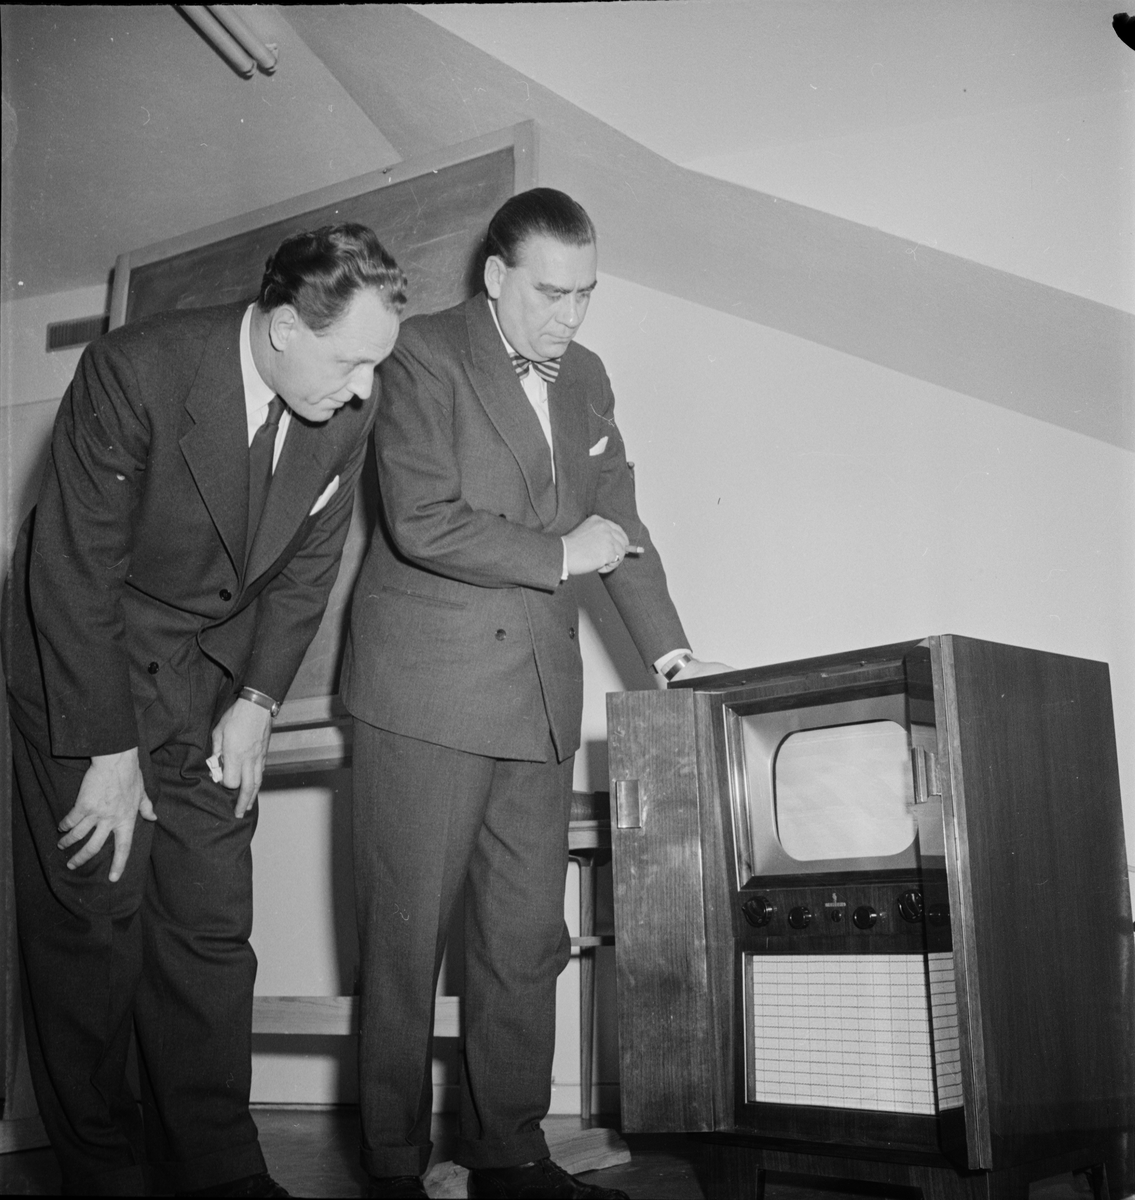 Forum, radioaffären med televisionsapparater, Uppsala 1954